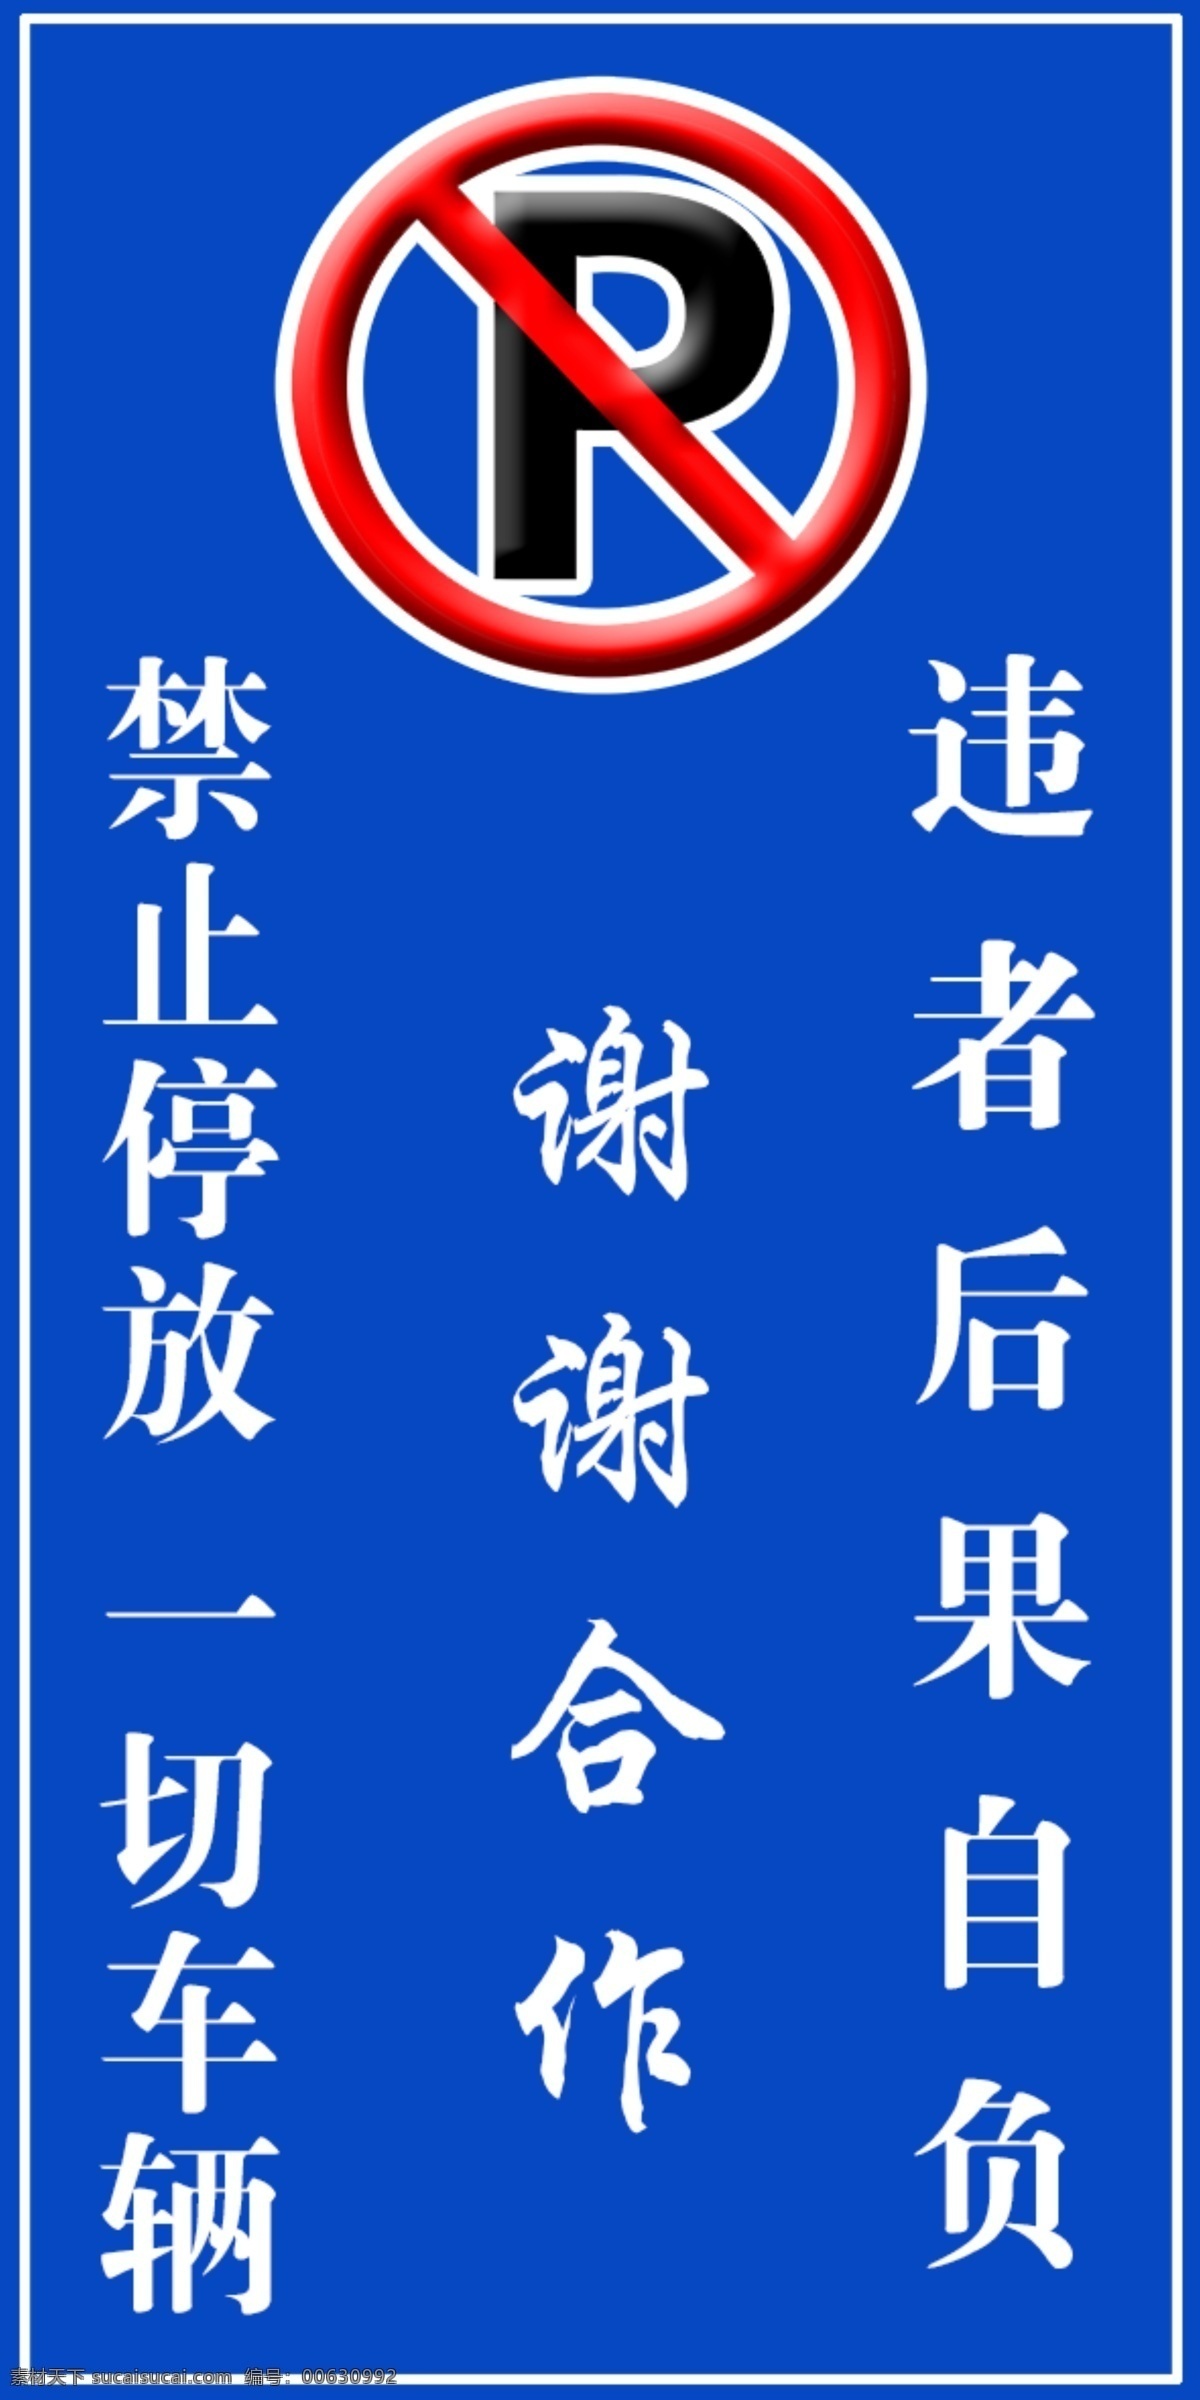 警示 禁止停放 警示牌 停车警示 看板 标志图标 公共标识标志